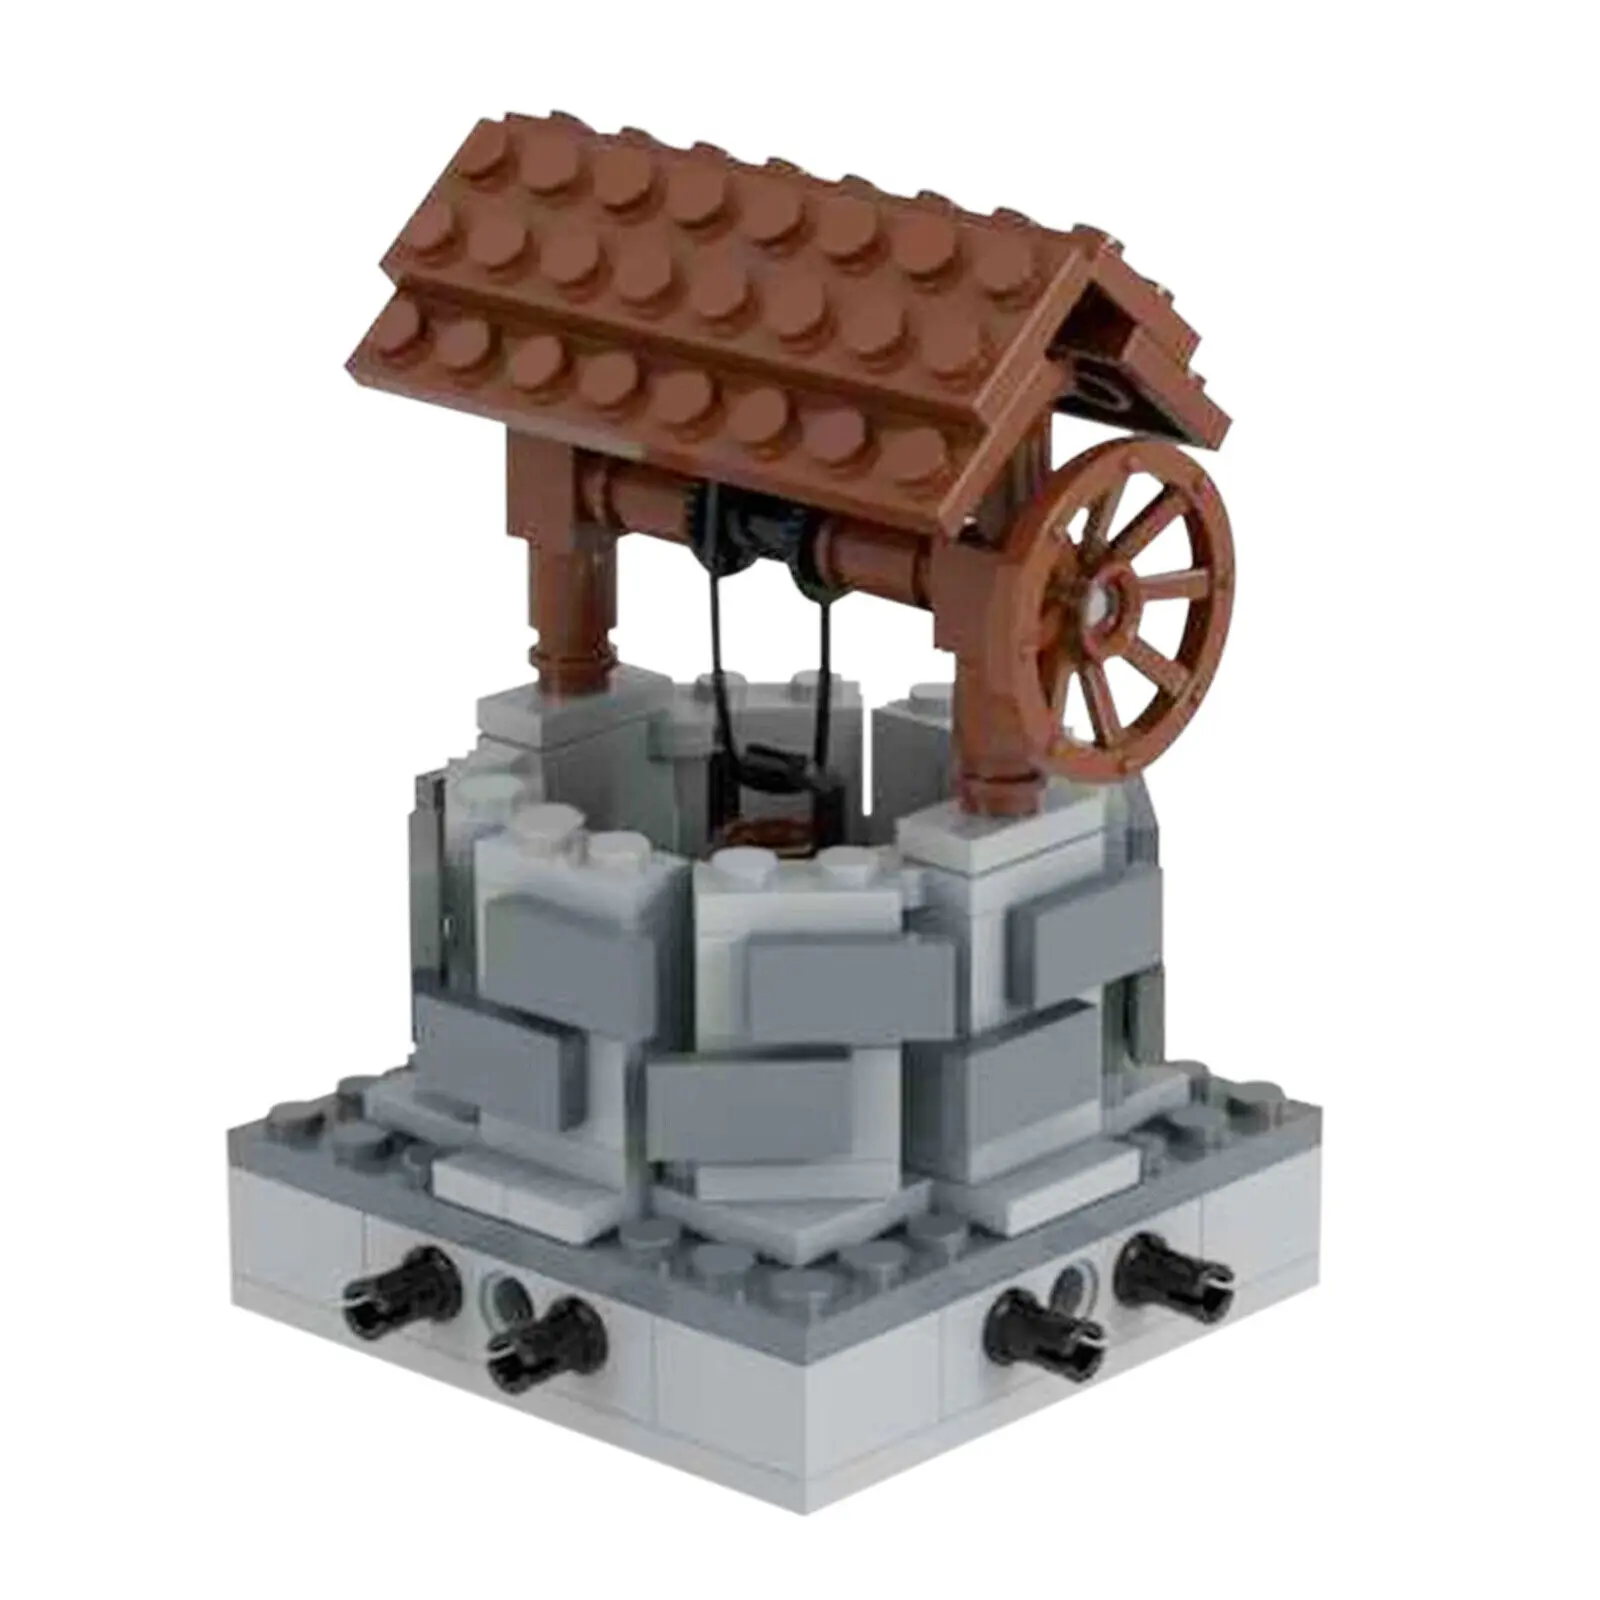 

Модель водяных скважин 109 штук для строительства средневековой архитектуры игрушки MOC Build